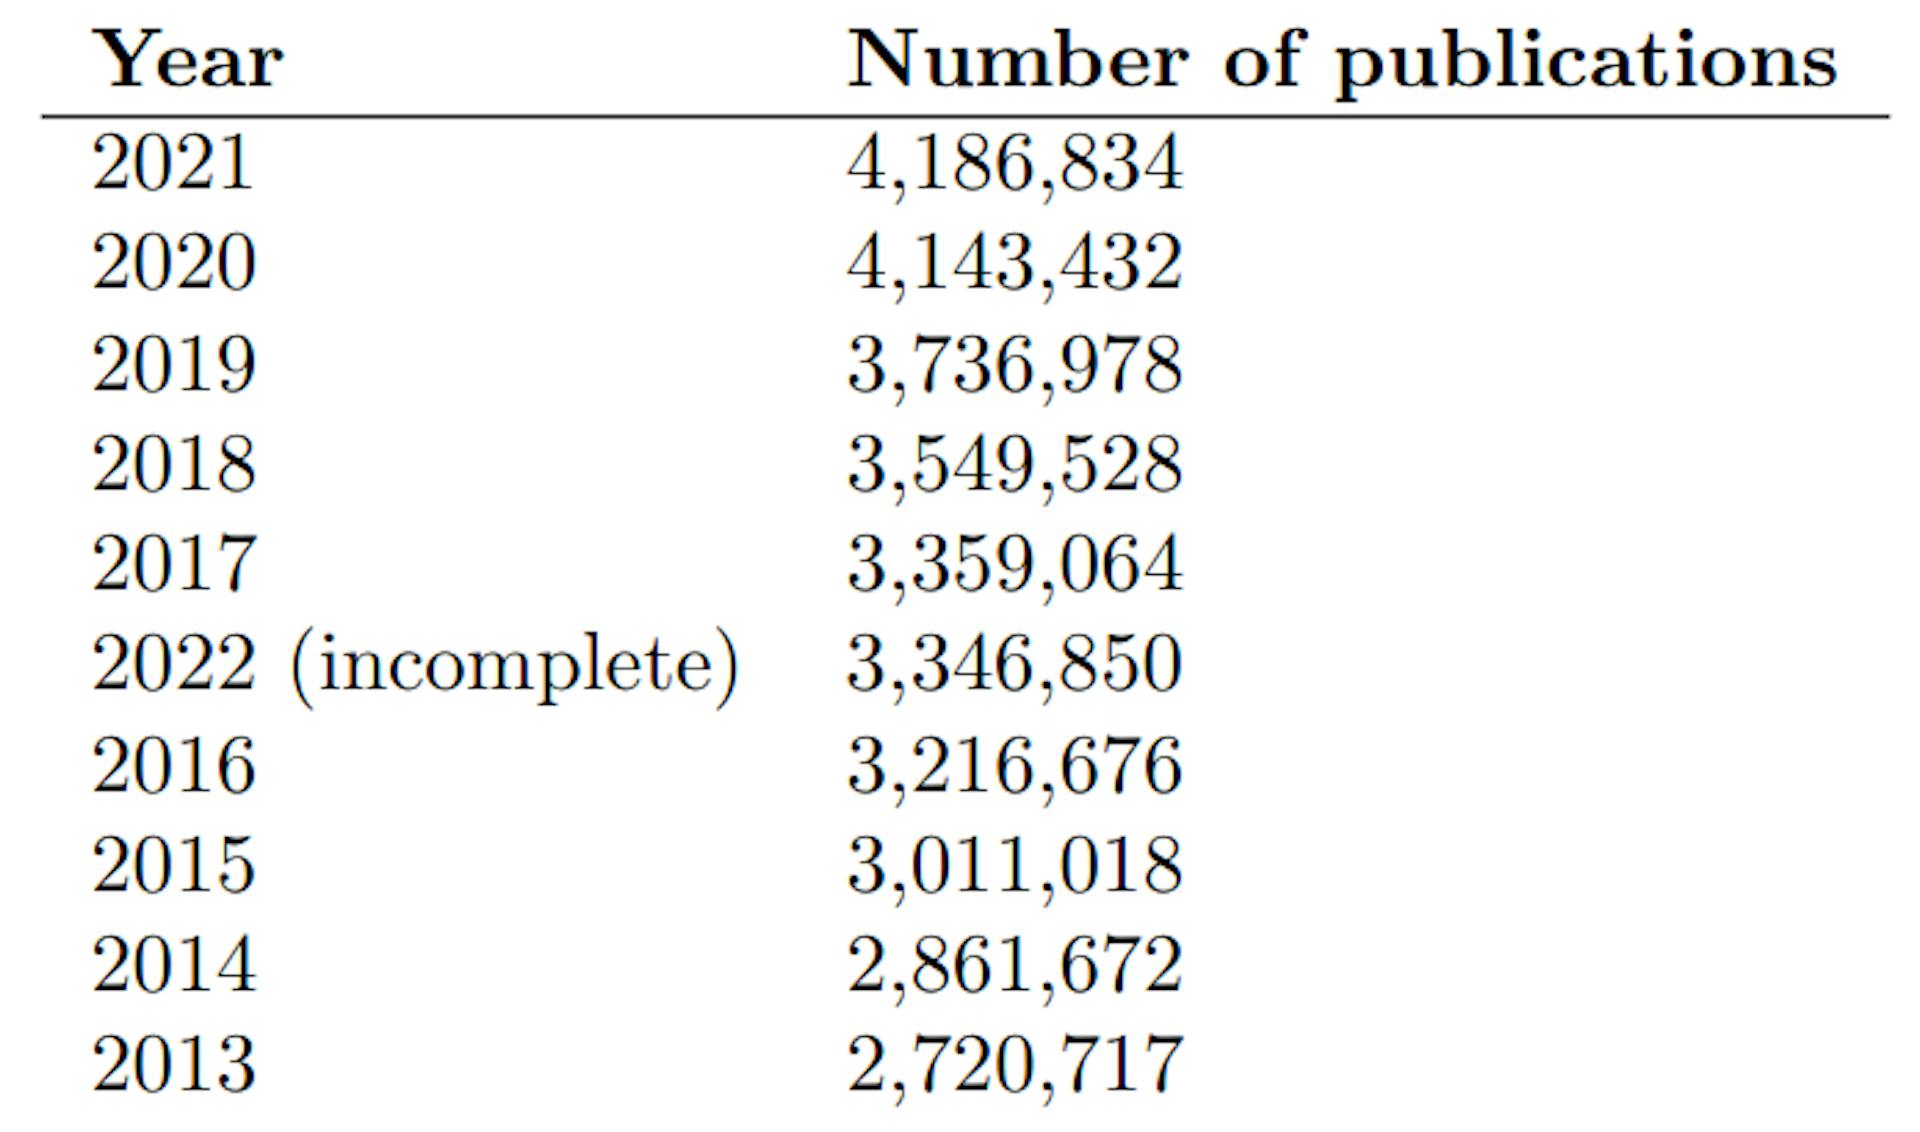 Bảng 6: Mười năm xuất bản hàng đầu theo số lượng xuất bản trong năm đó